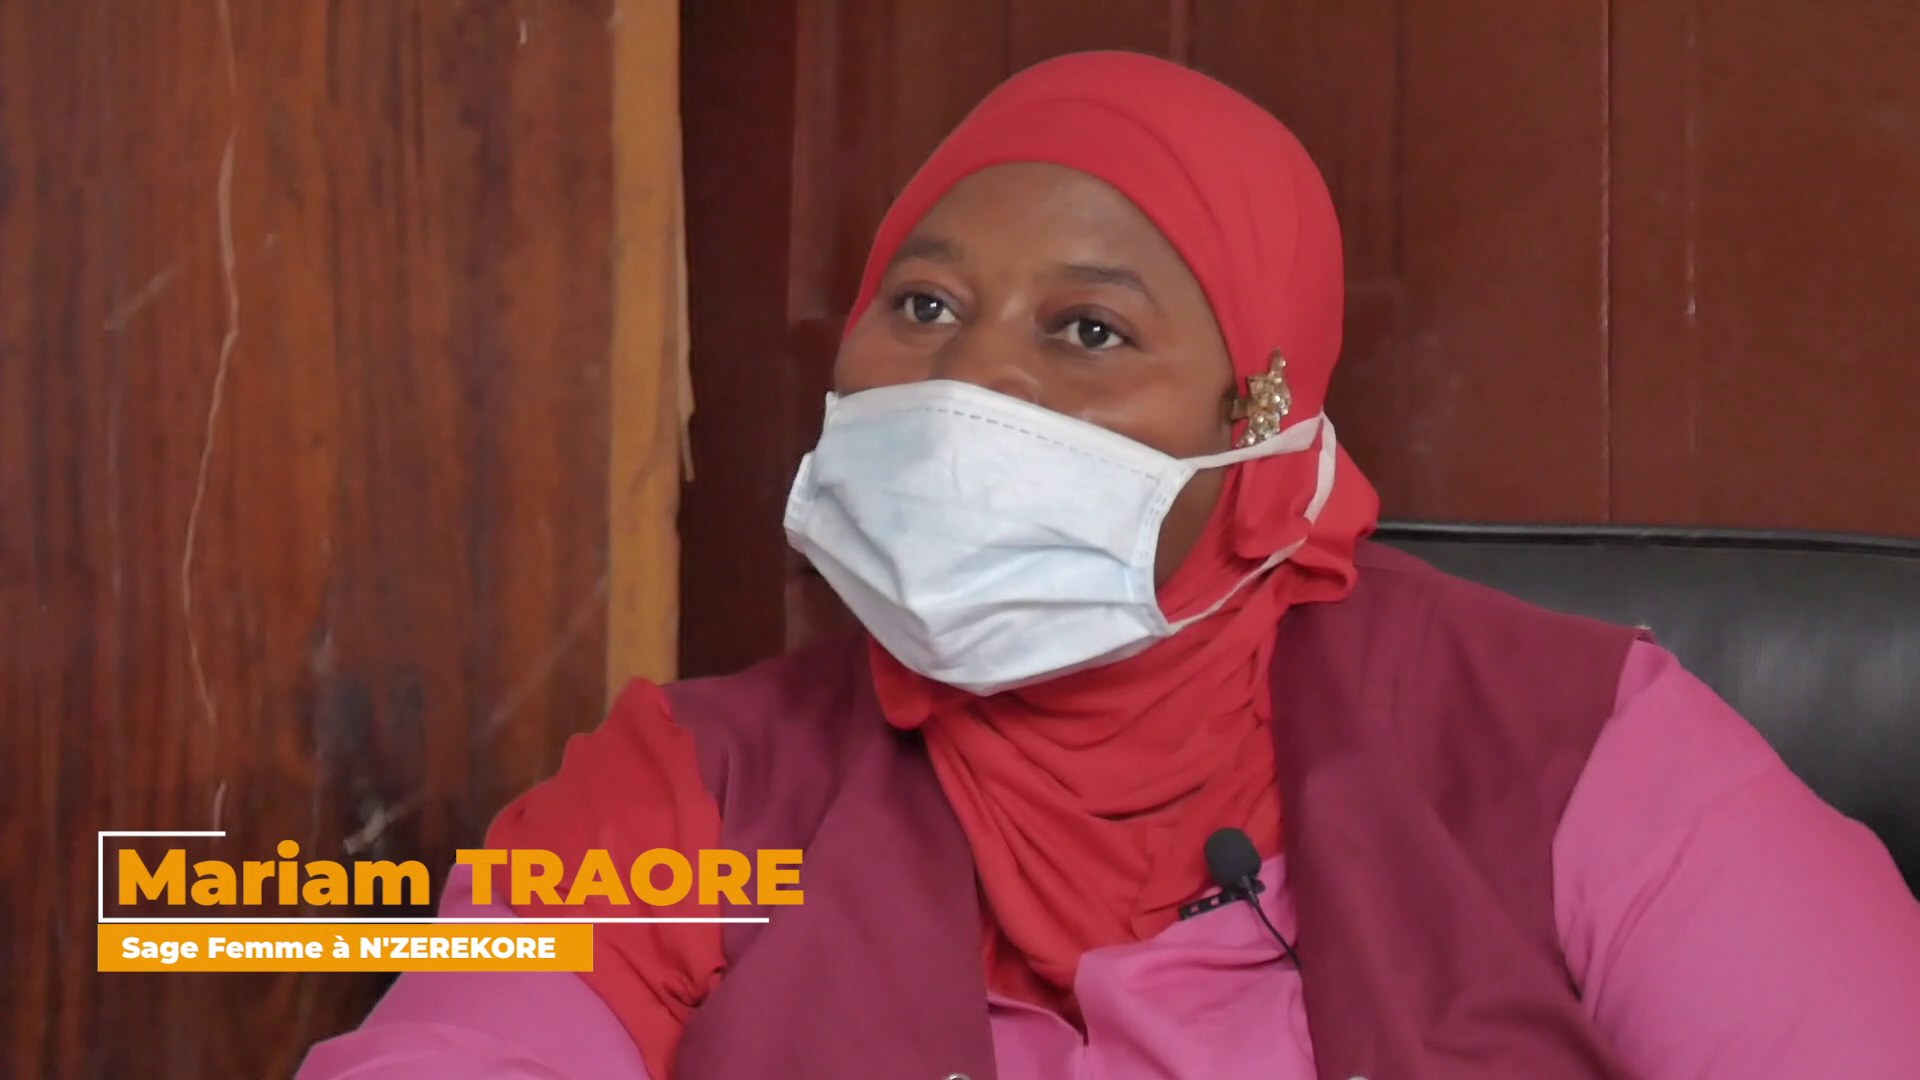 Mariam Traoré sage-femme à l’Hôpital Régionale de N’Zérékoré s’engage pour la continuité des services de santé maternelle